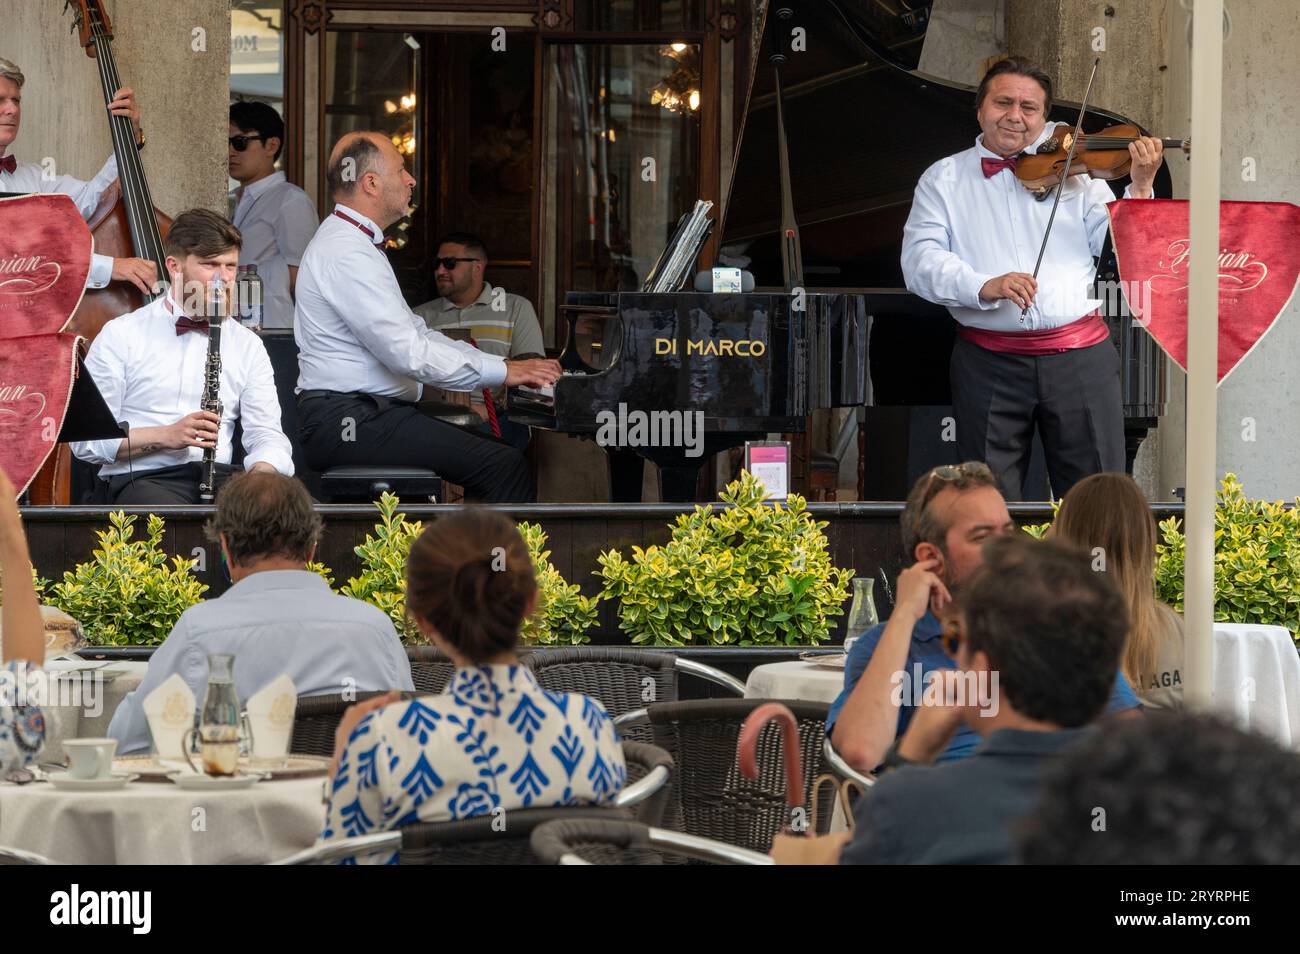 Eine Live-Band tritt bei Kunden auf, die im Caf Florian auf dem Markusplatz in Venedig in der venezianischen Region Norditalien sitzen. Stockfoto